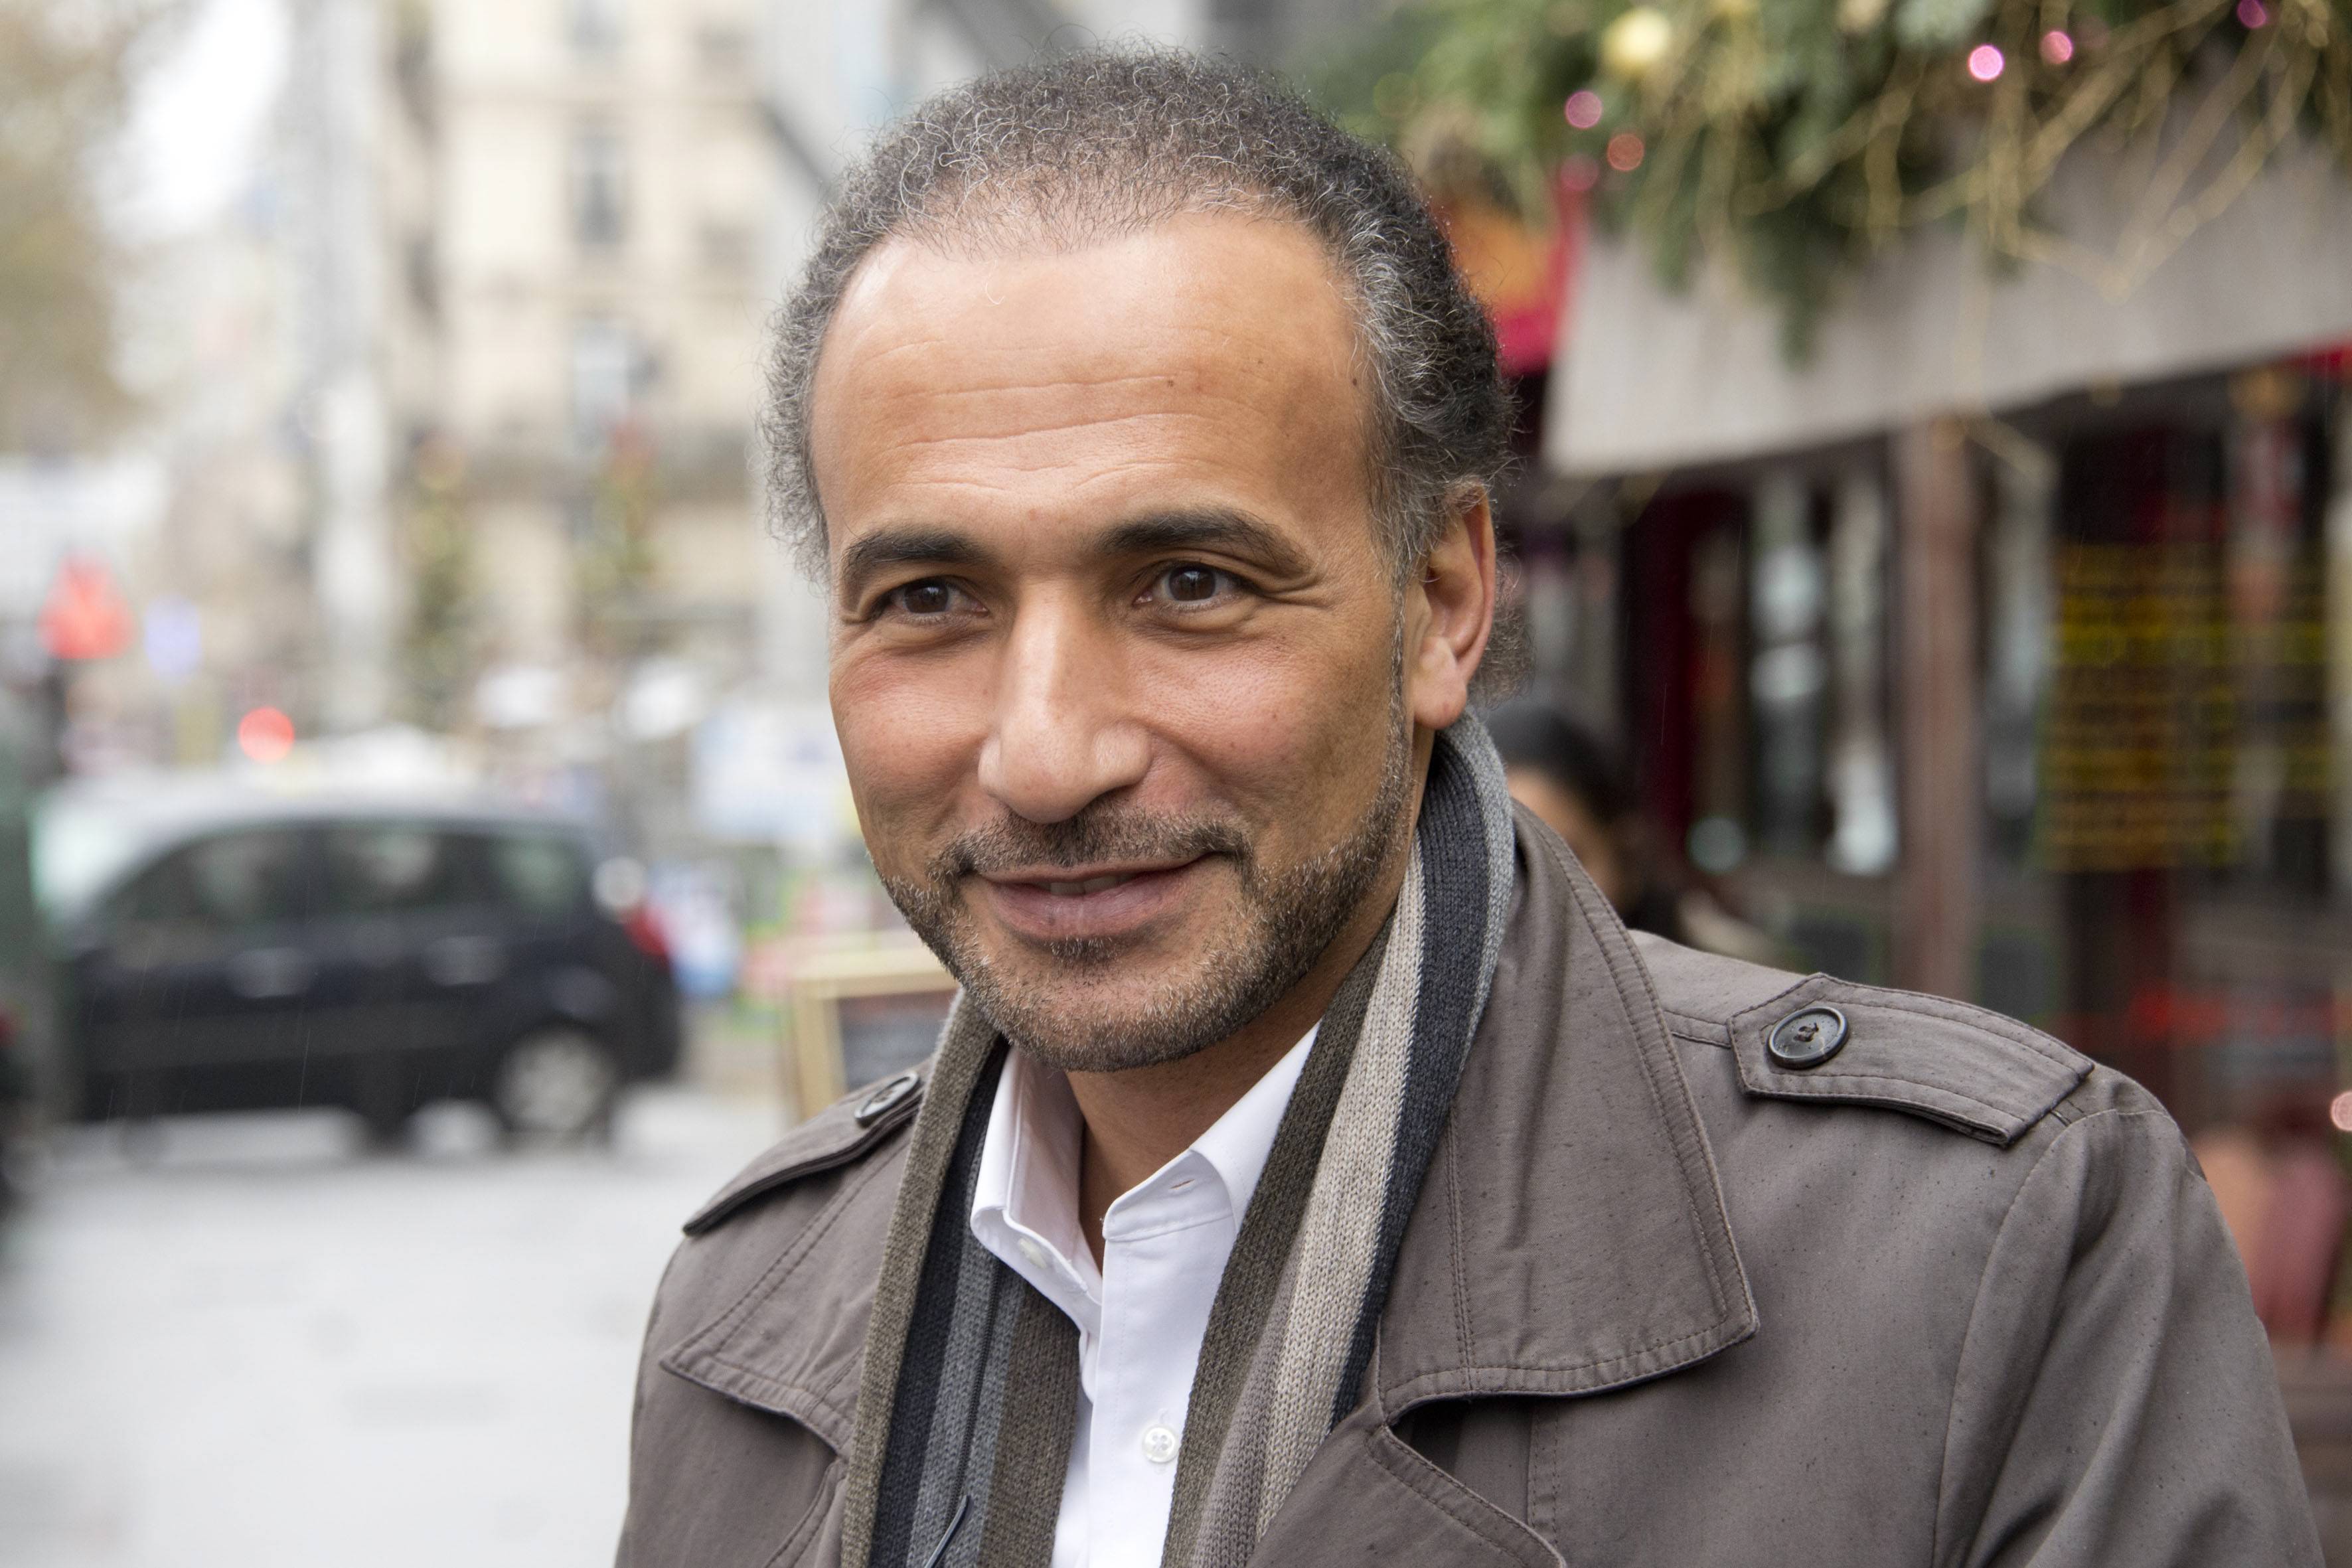 Le professeur Tariq Ramadan remis en liberté sous conditions